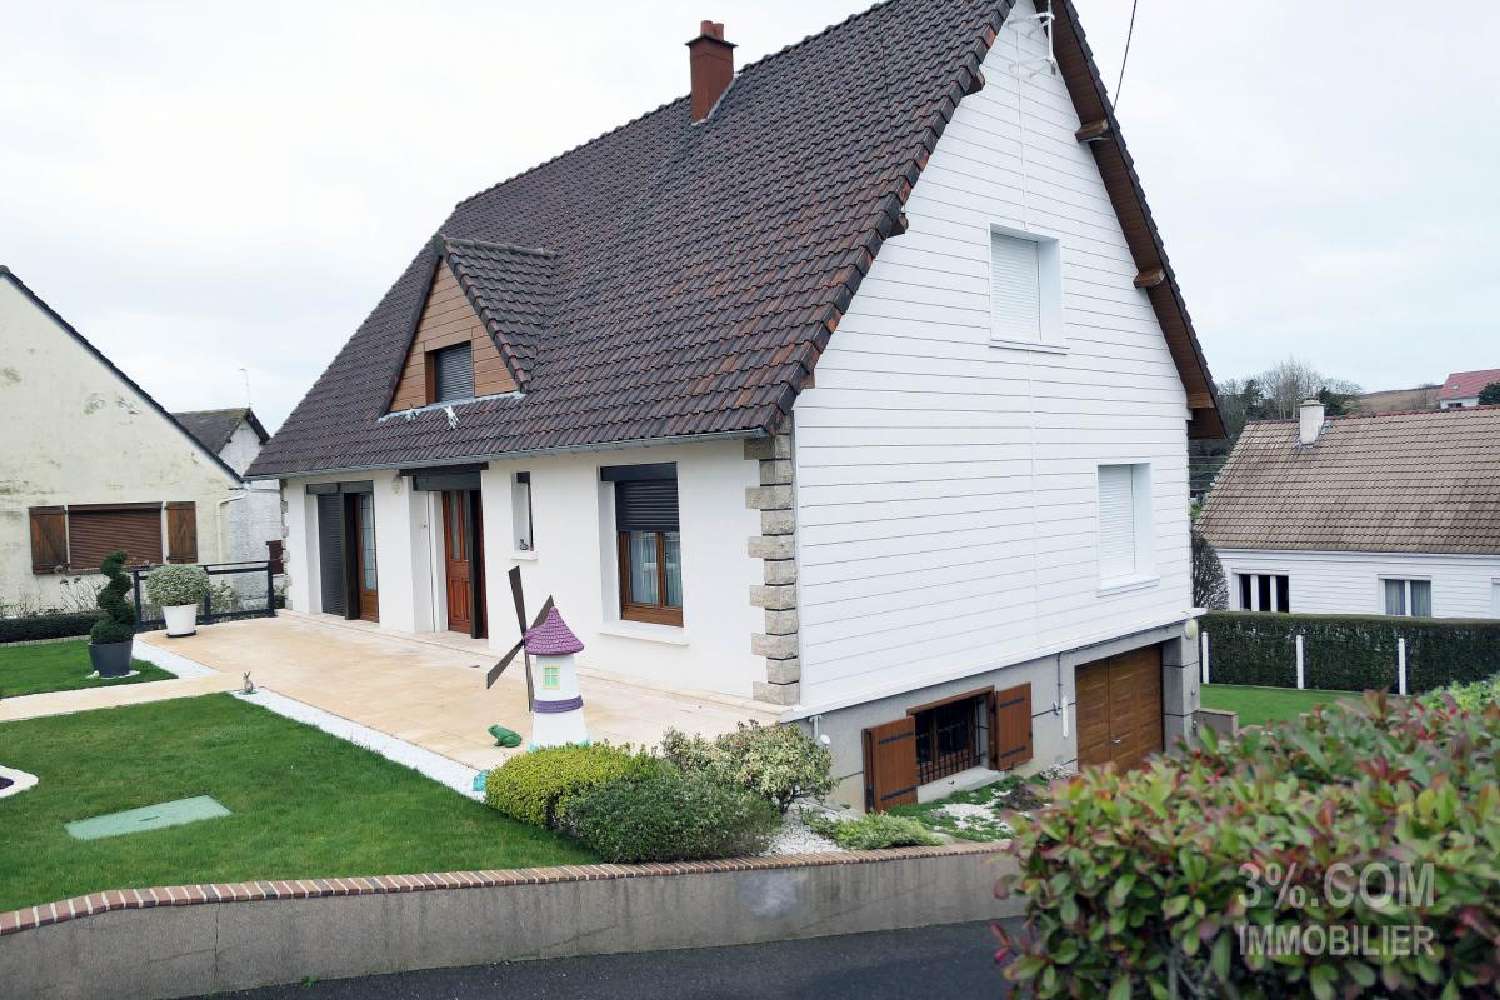  à vendre maison Criel-sur-Mer Seine-Maritime 3